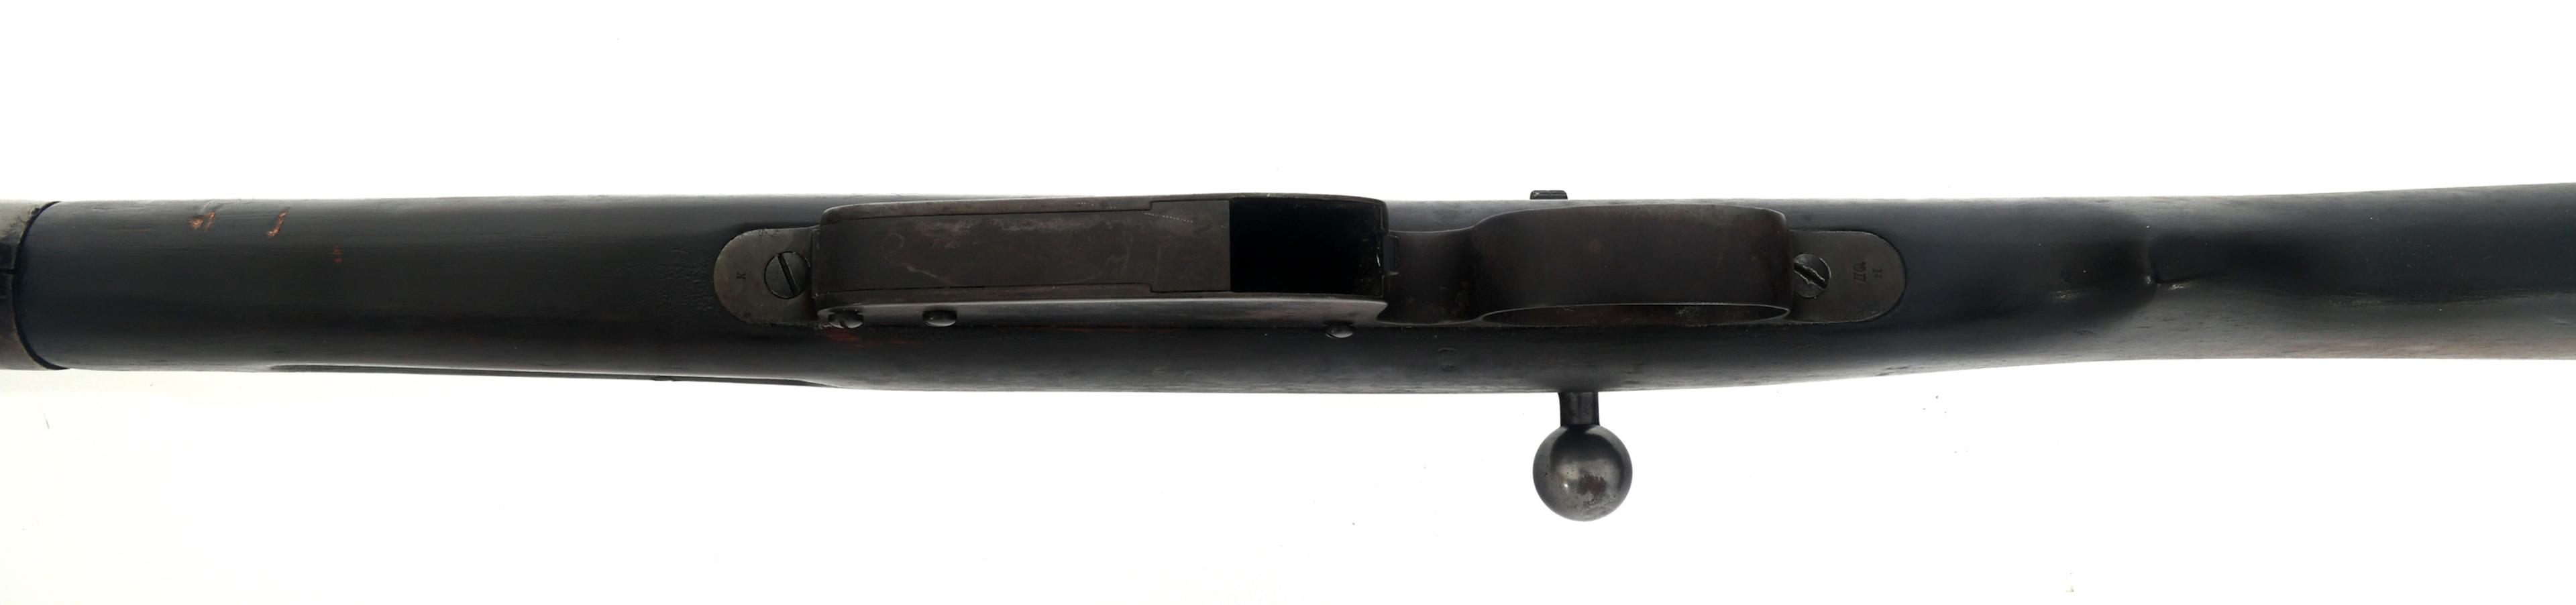 SPORTERIZED STEYR MODEL 1886 11mm MANNLICHER RIFLE